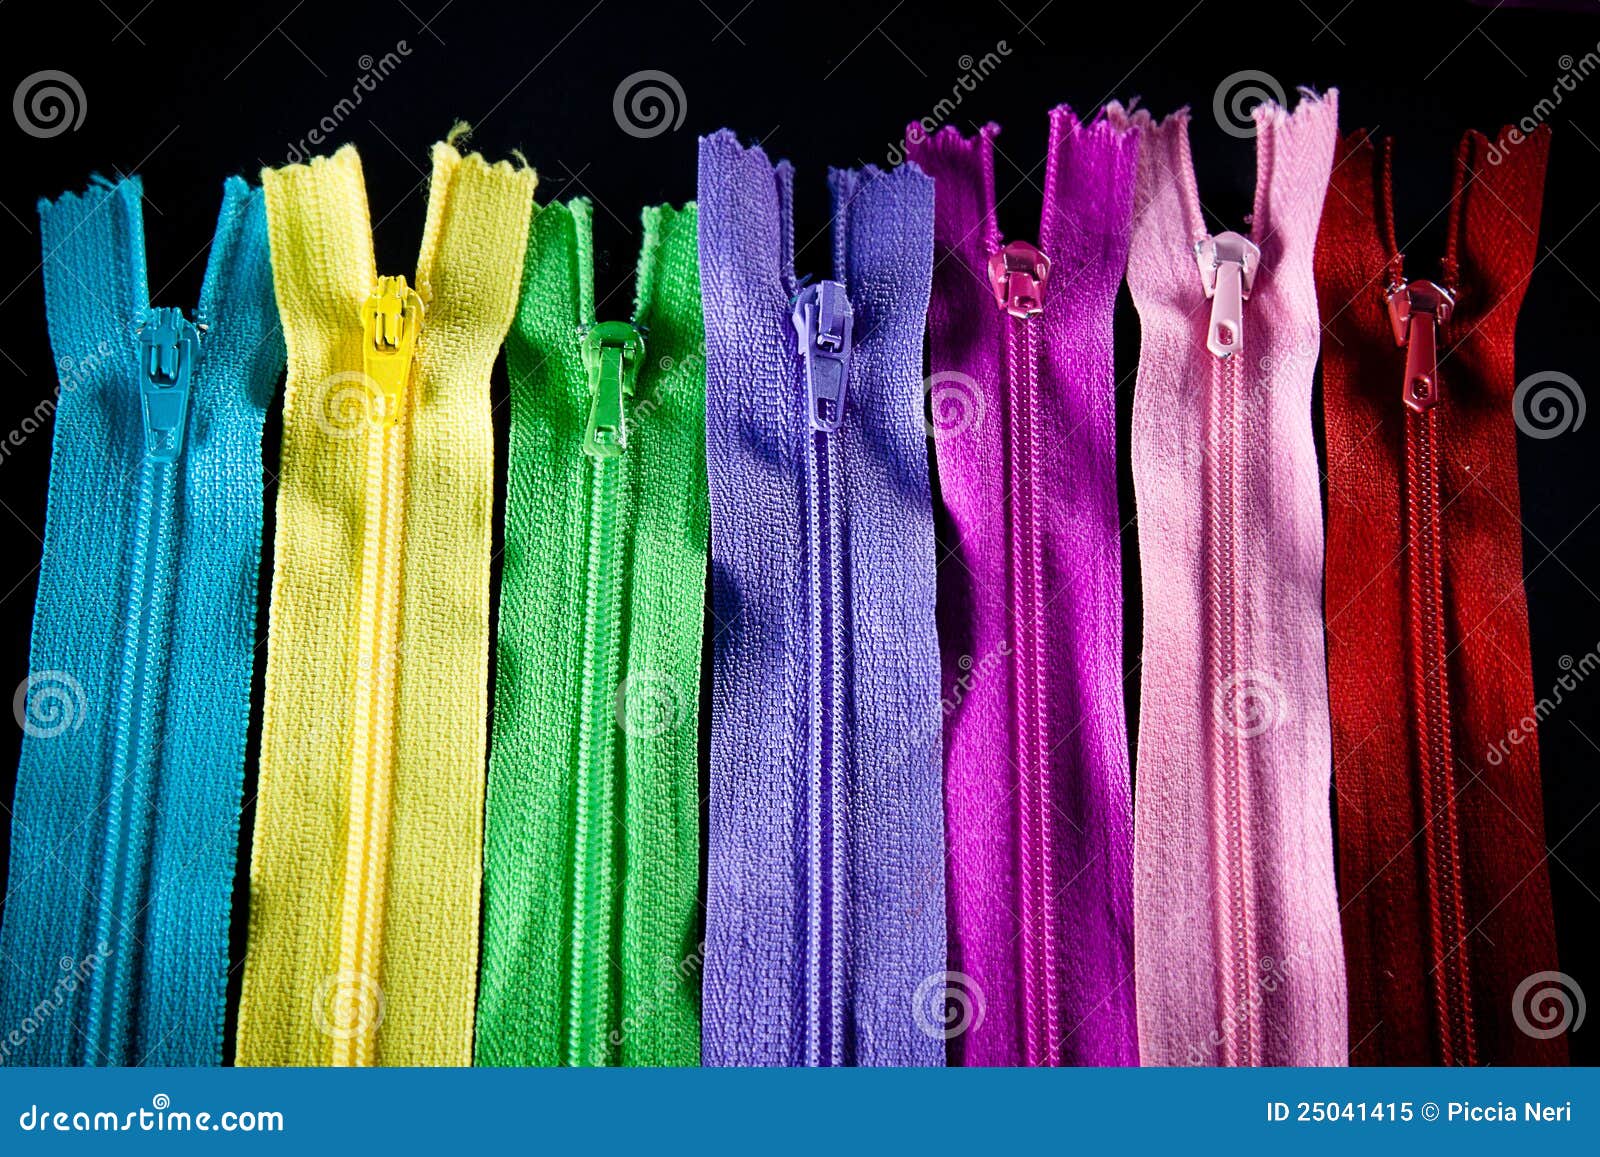 Colourful zips stock image. Image of indigo, pink, hobby - 25041415